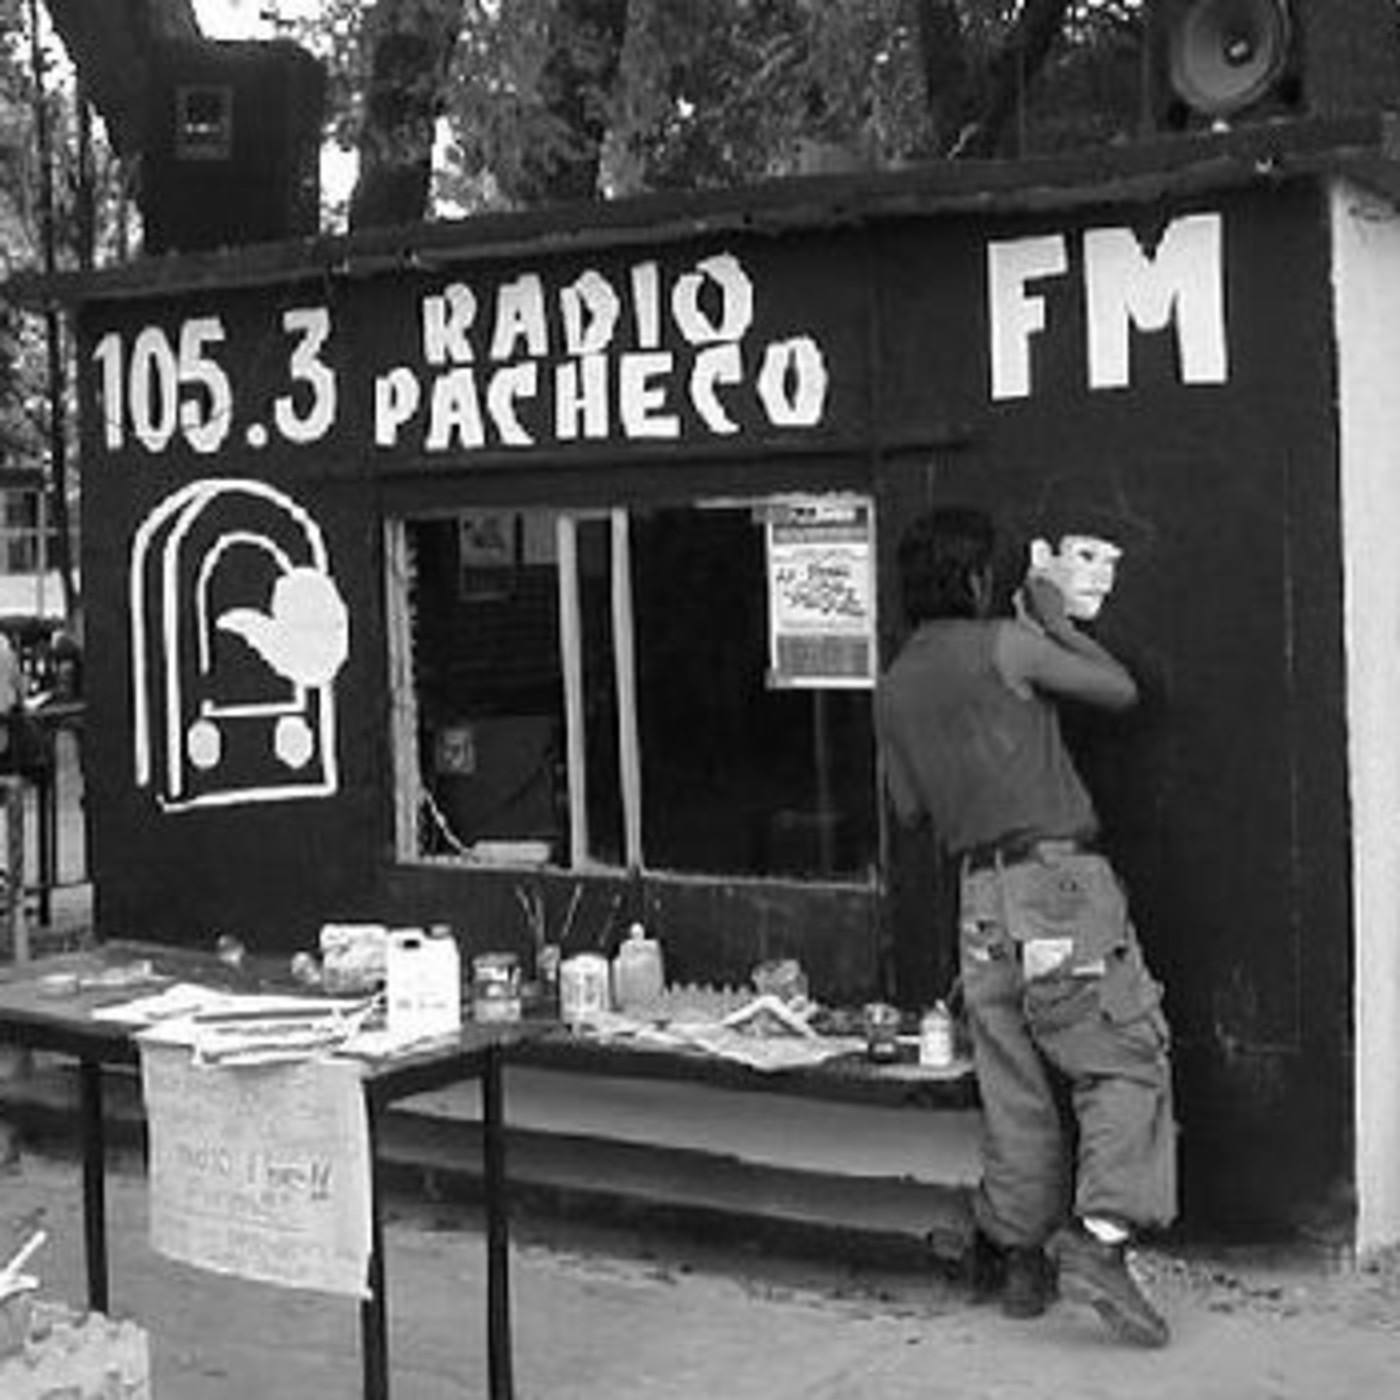 #RadioPacheco